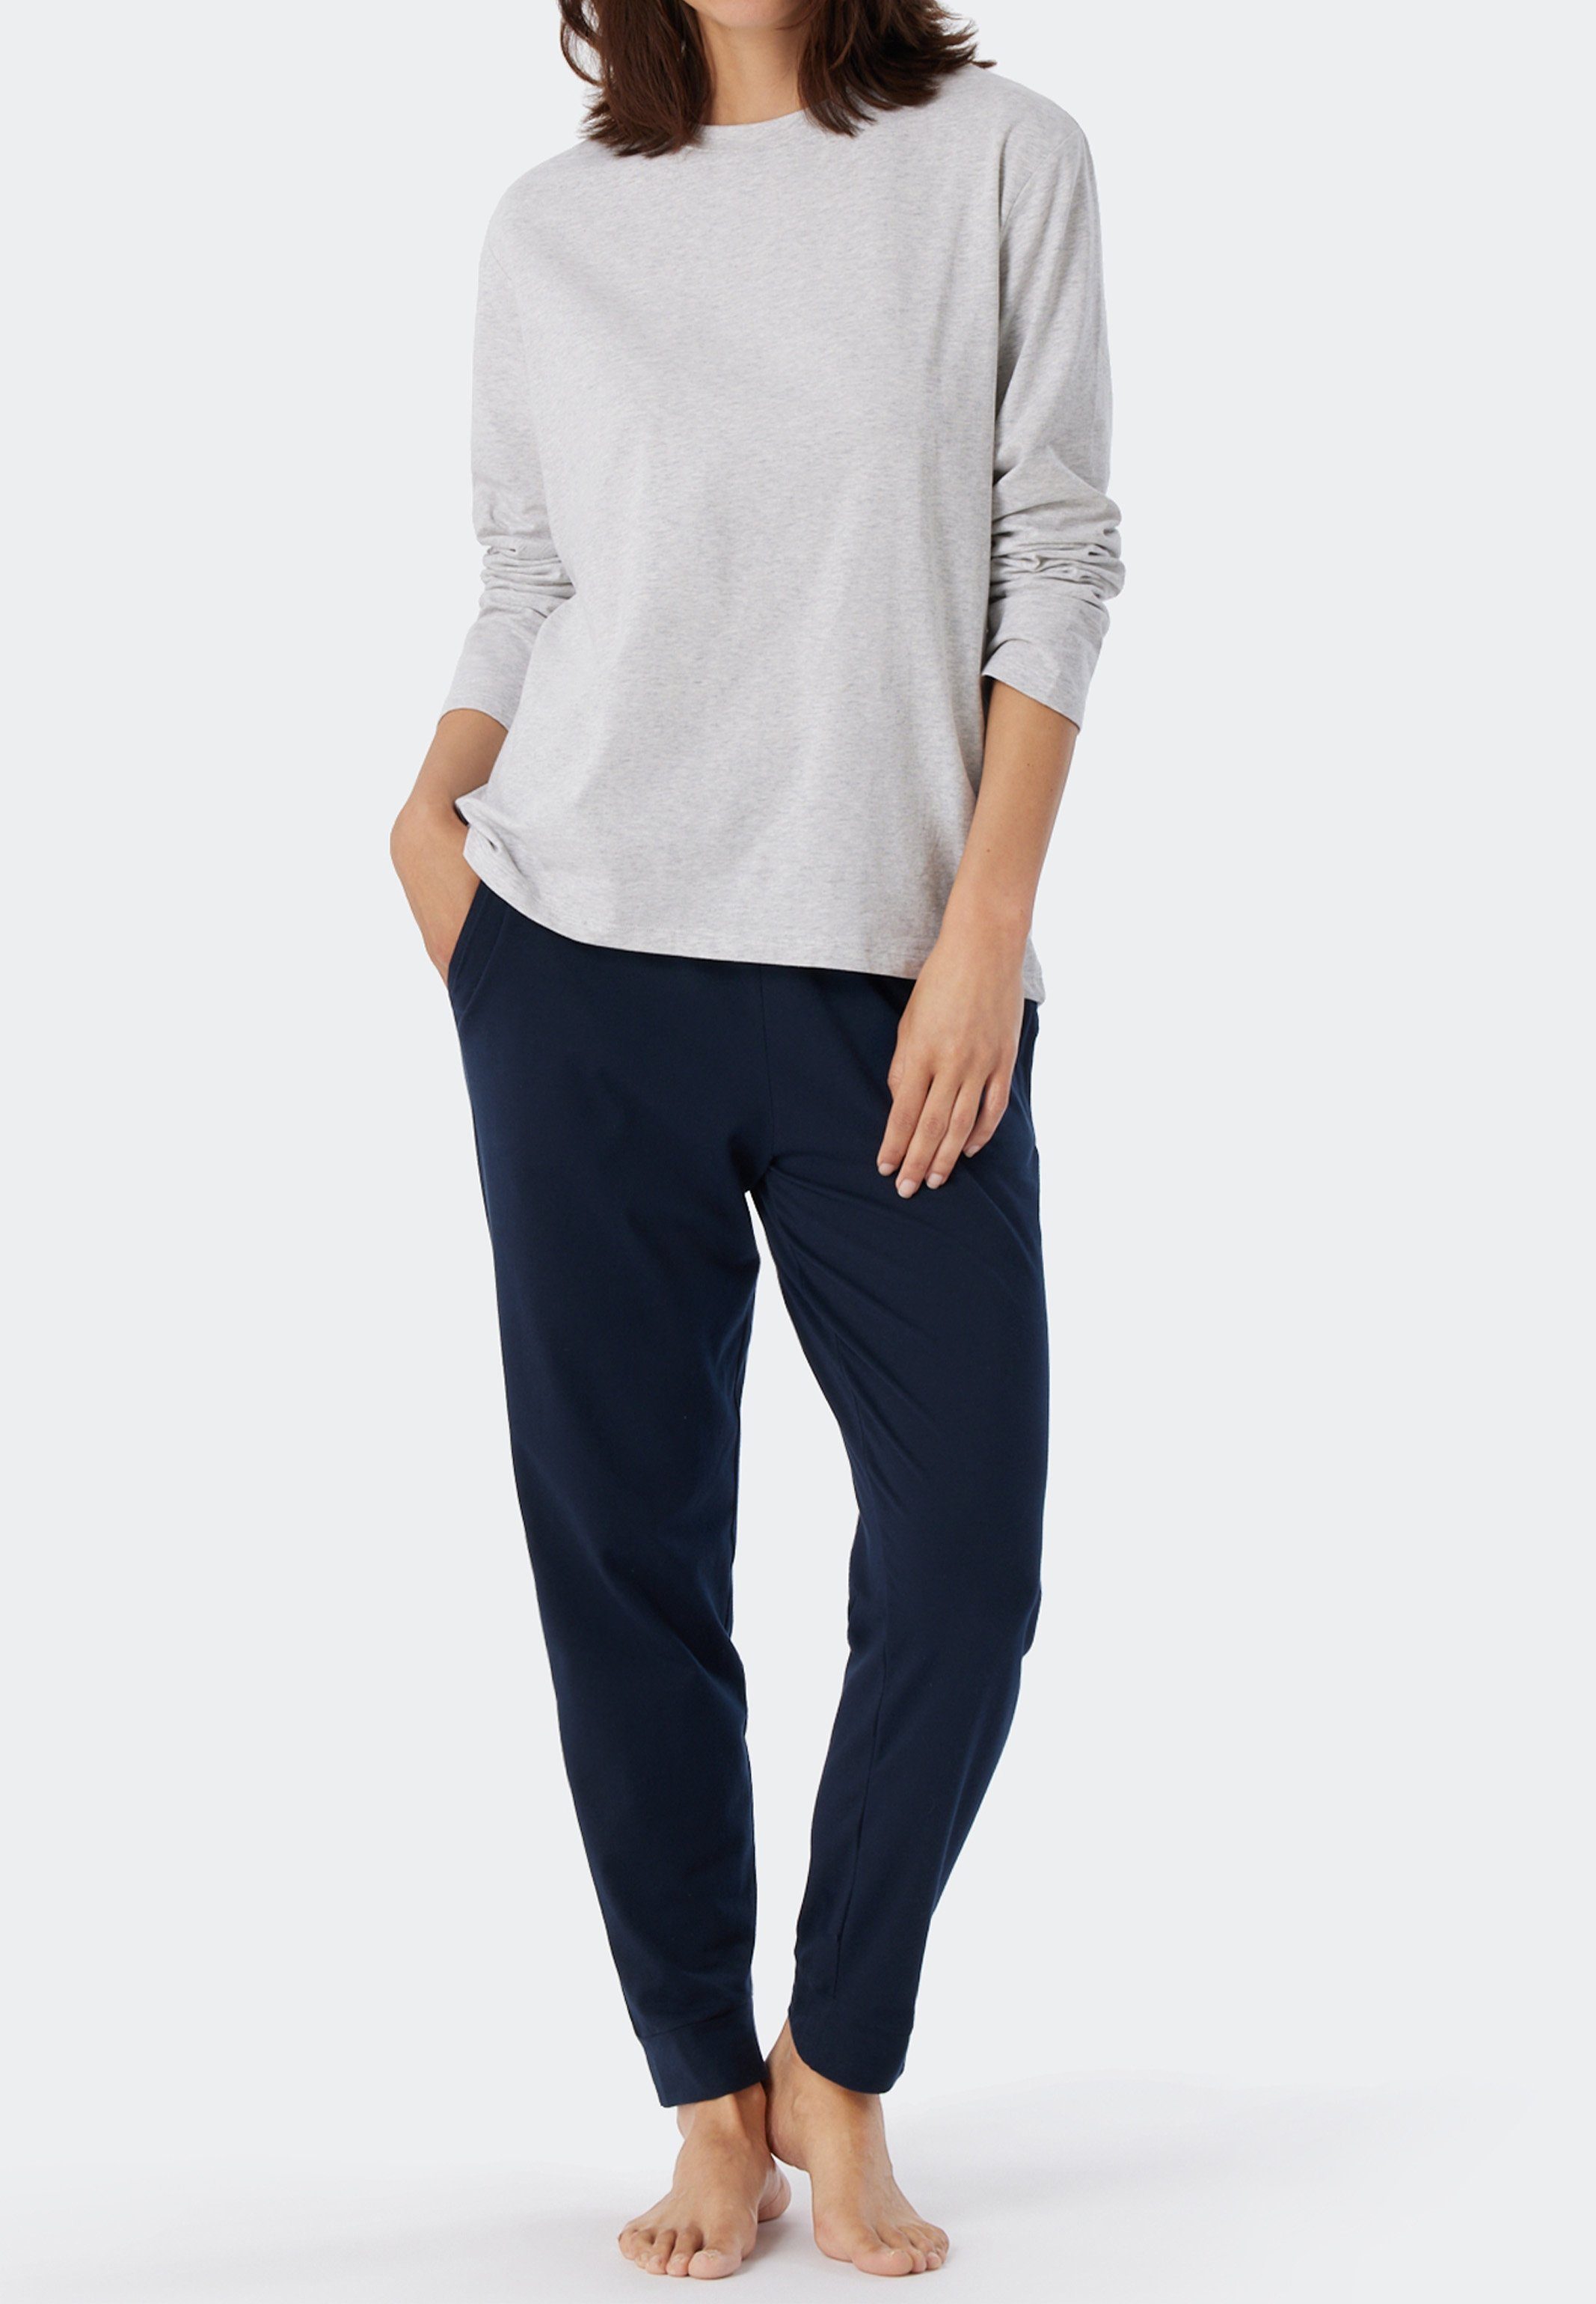 Grau-Melange langarm (1-tlg) Shirt Schiesser Organic Pyjamaoberteil Cotton Mix Schlafanzug - & Baumwolle Relax -